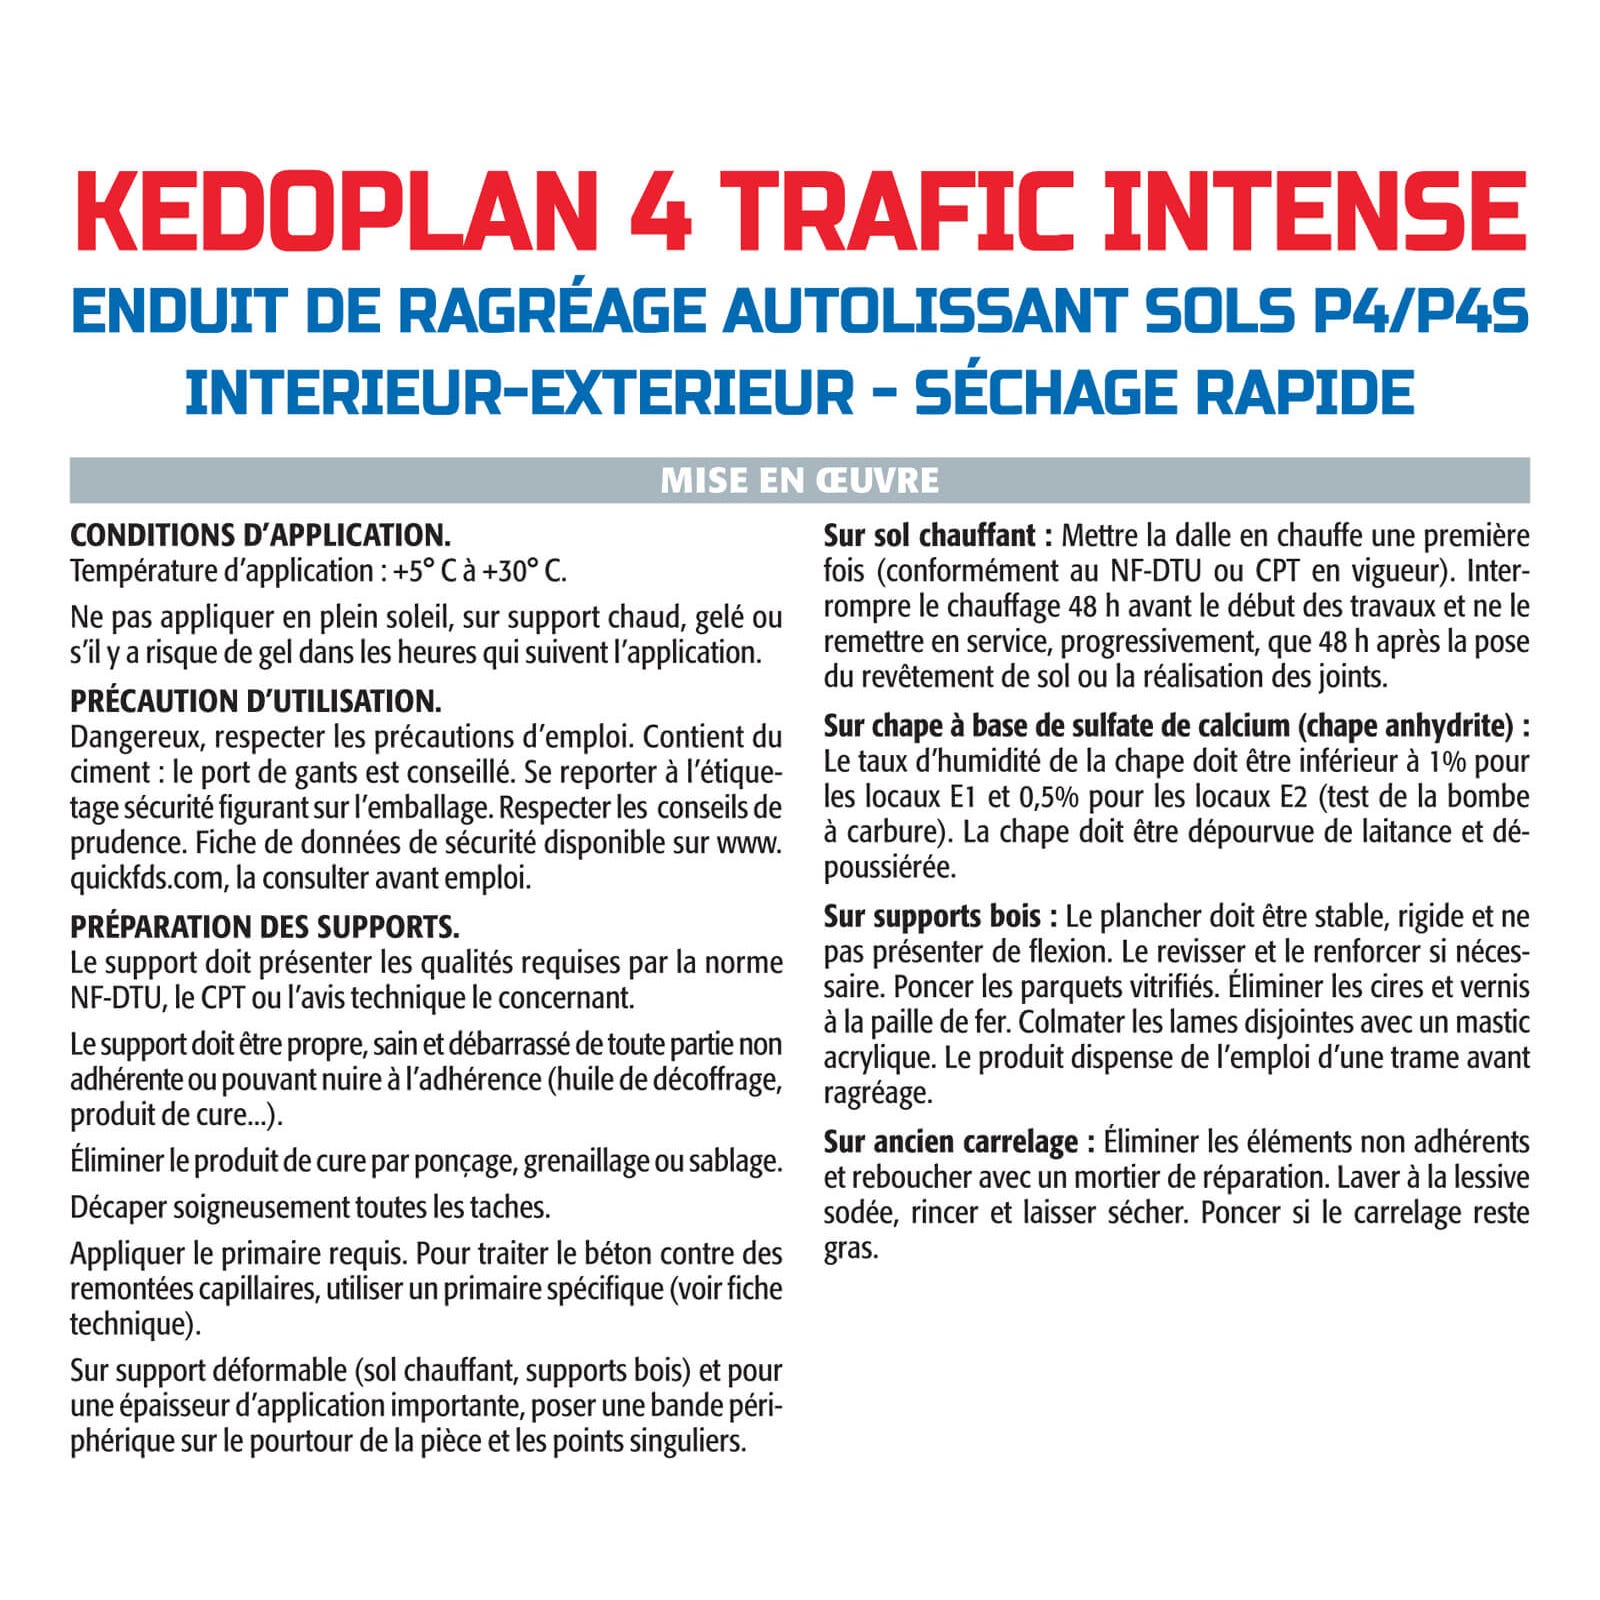 Semin - Enduit de Ragréage autolissant - Kedoplan 4 Traffic Intense - Intérieur/Extérieur - Sac 25 kg (lot de 3) 3